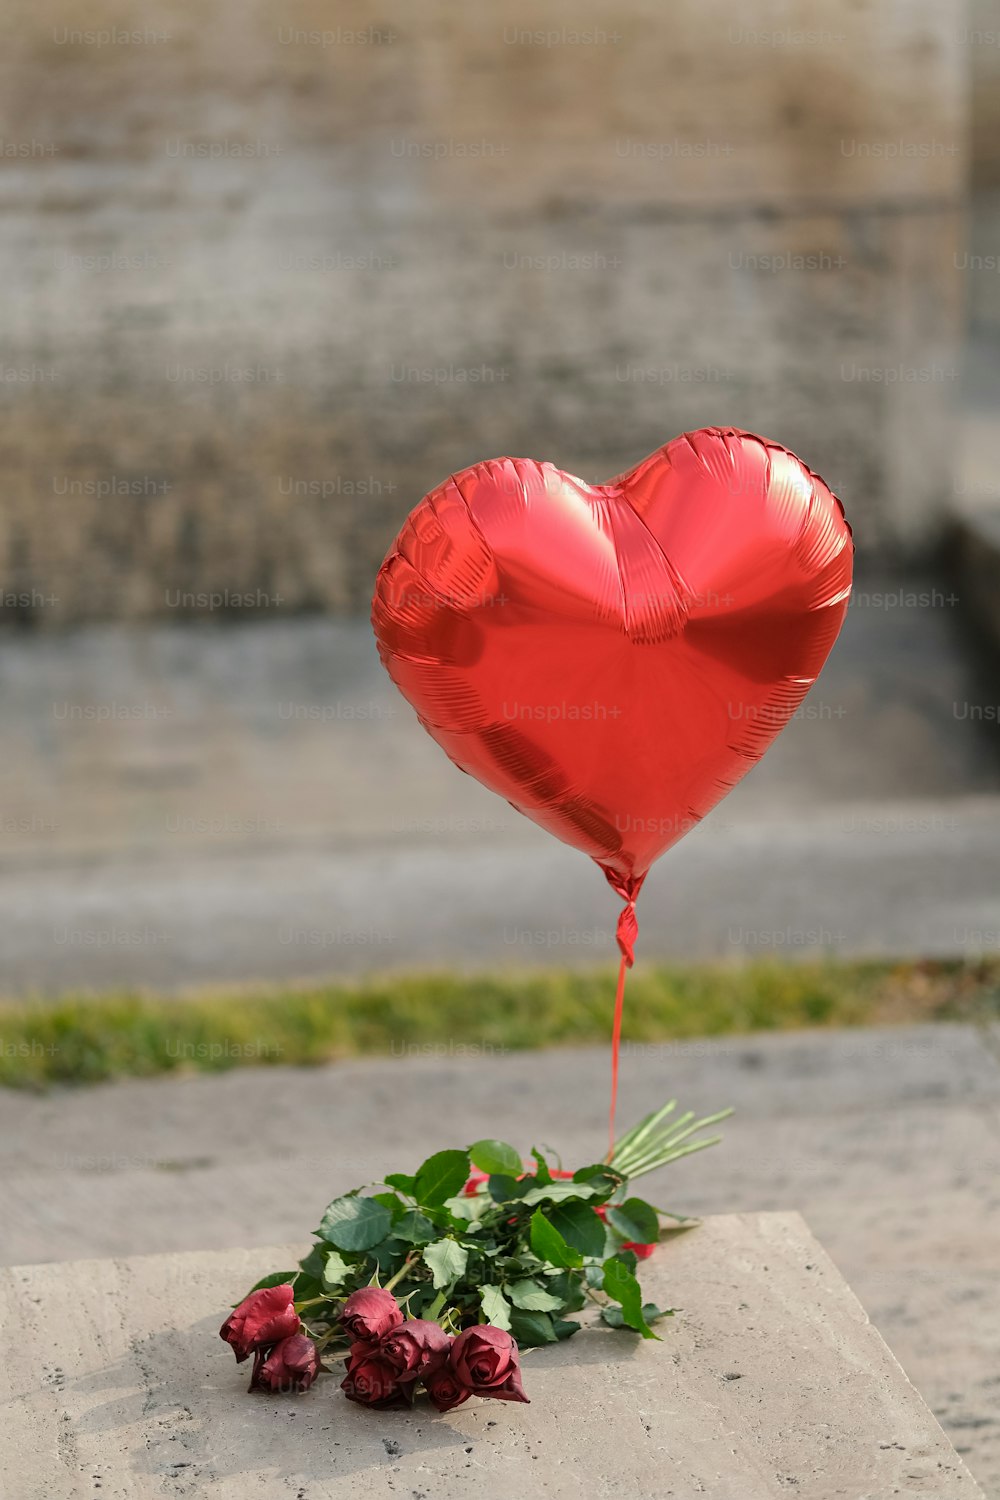 un ballon rouge en forme de cœur posé sur une dalle de ciment